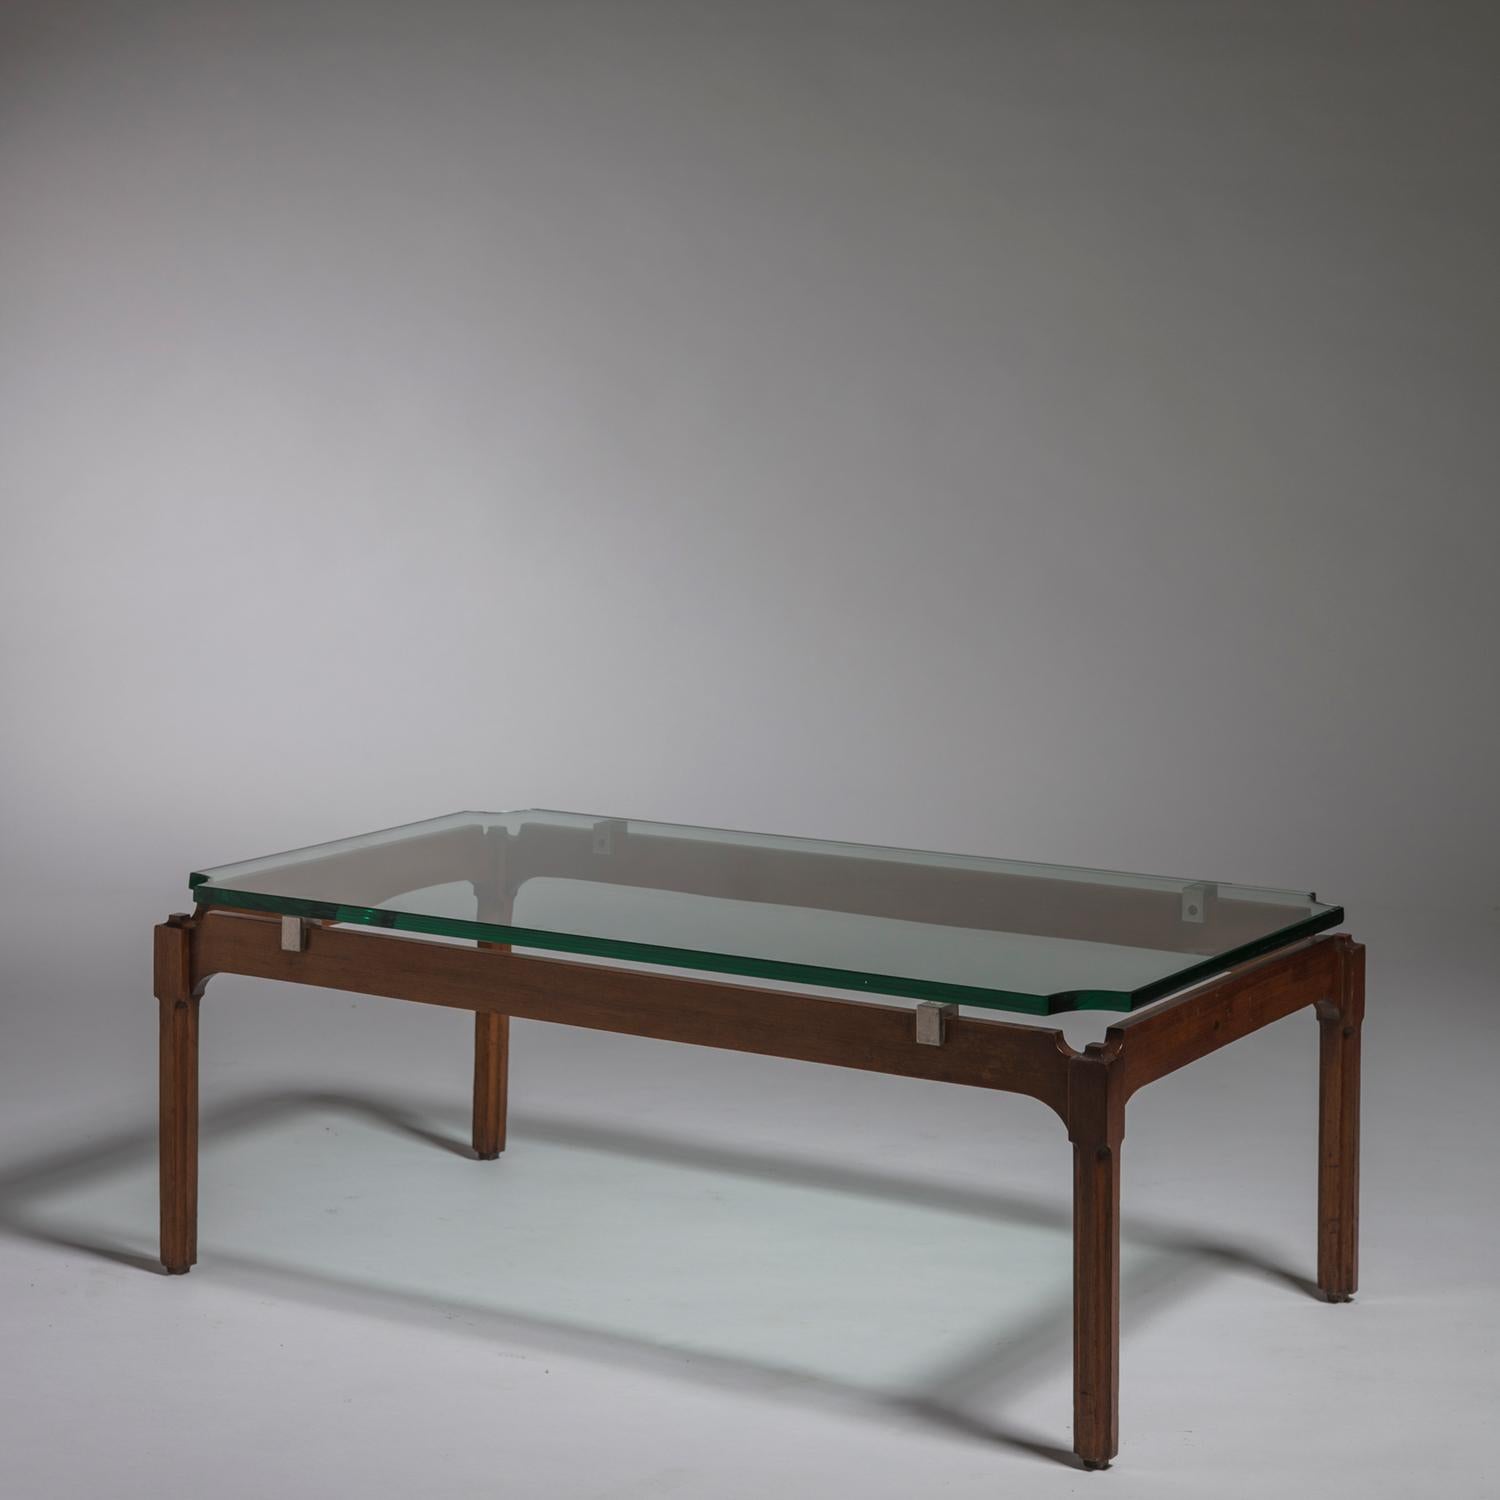 Seltener niedriger Tisch von Adelmo Rascaroli.
Holzrahmen mit akkuraten Details, Messingdetails und Glasplatte mit abgerundeten Kanten.